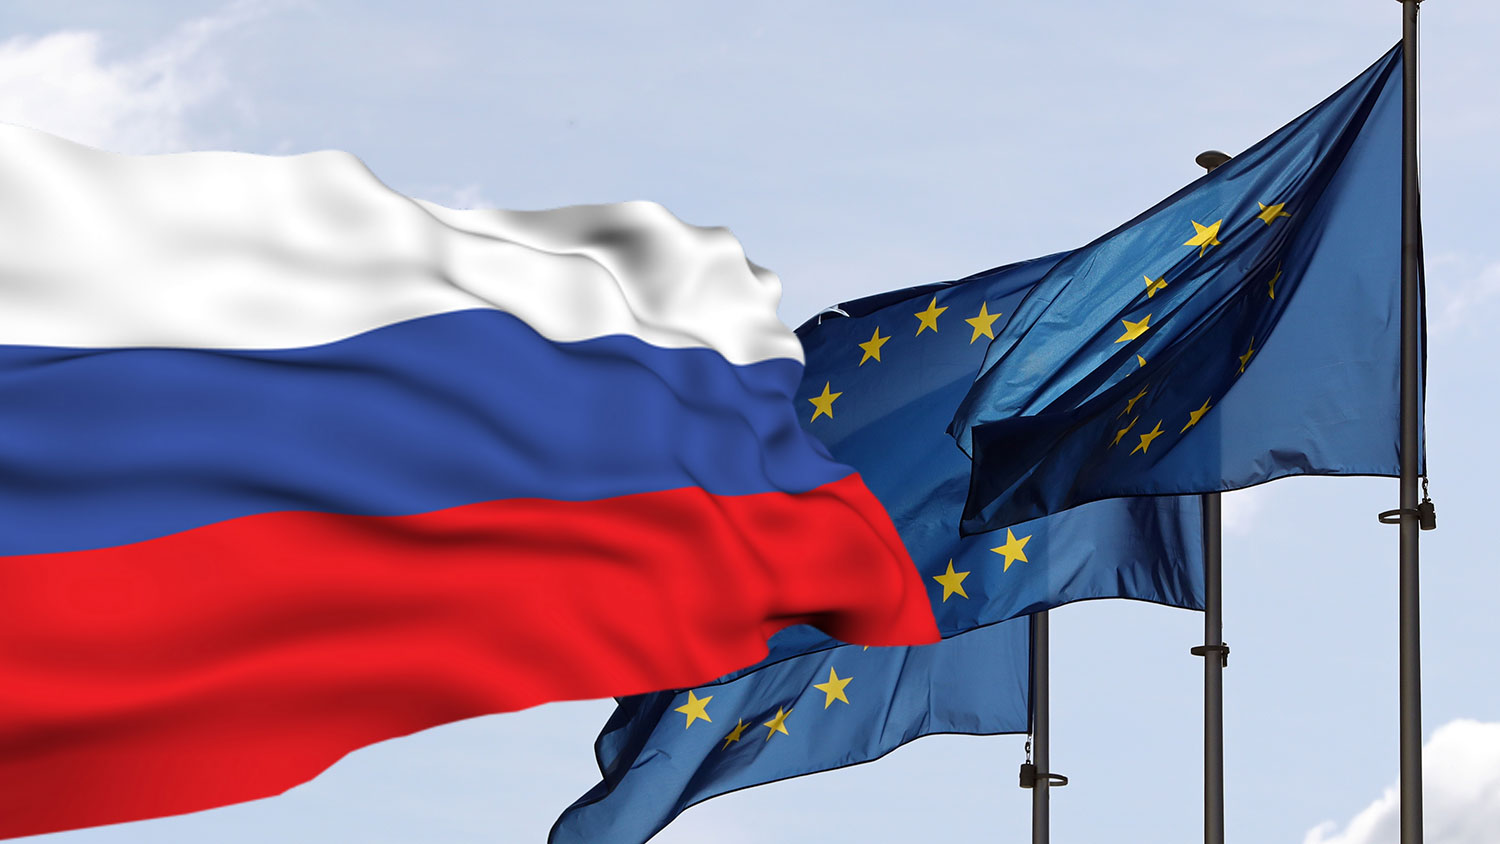 ЕС официально ввел антироссийские санкции в связи с признанием ДНР и ЛНР